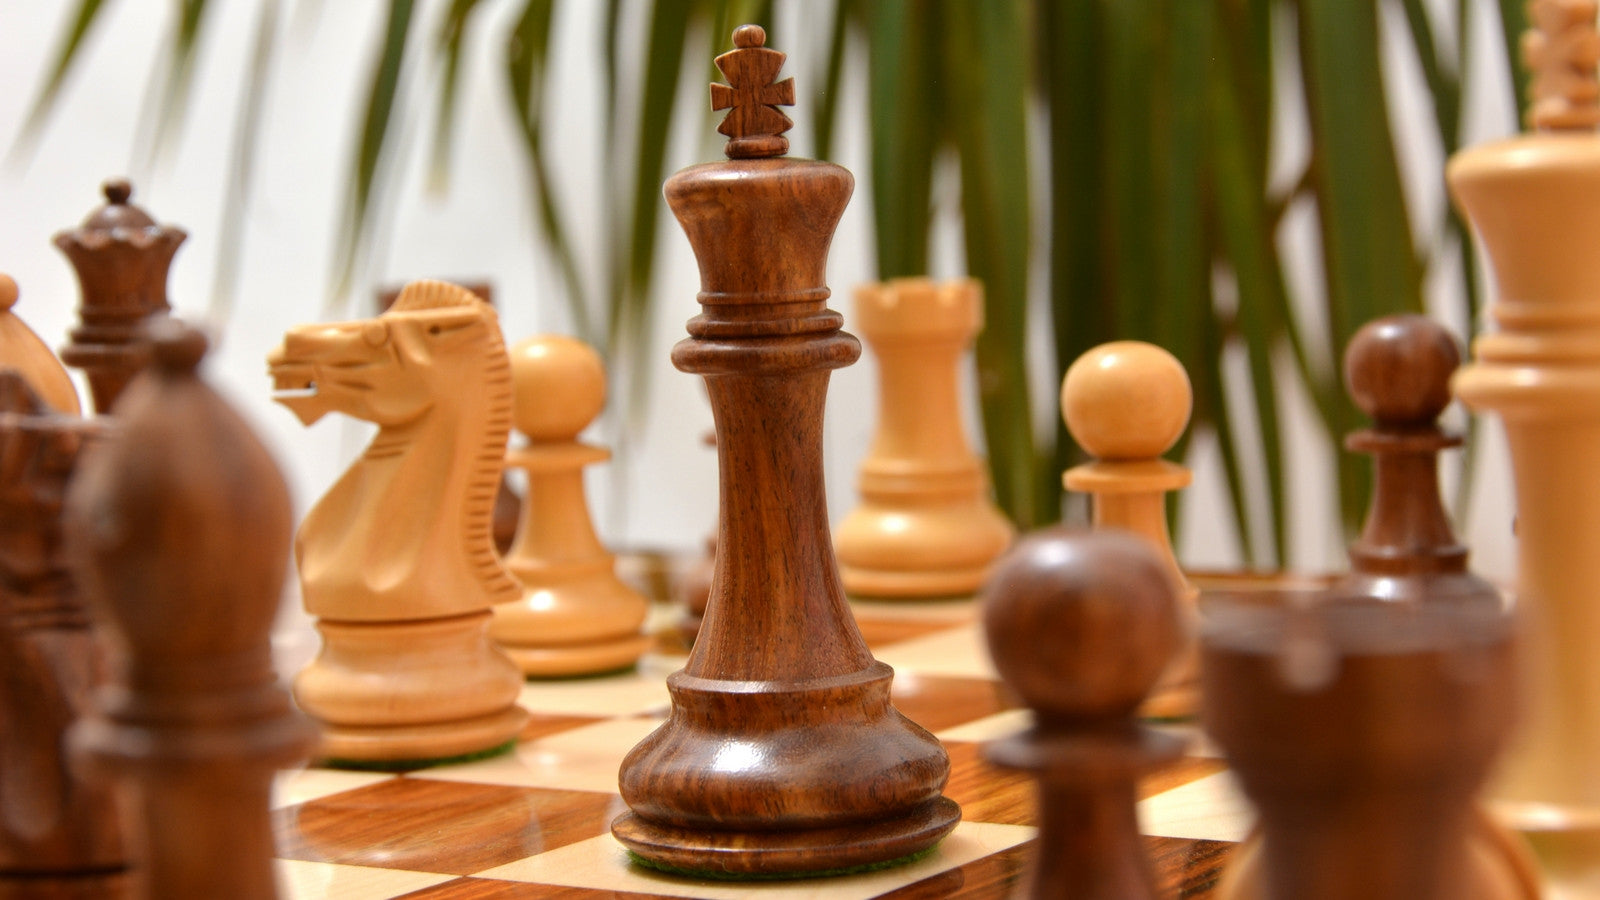 Paket] Hochwertiges Tournament Schachspiel aus Holz mit Gravur